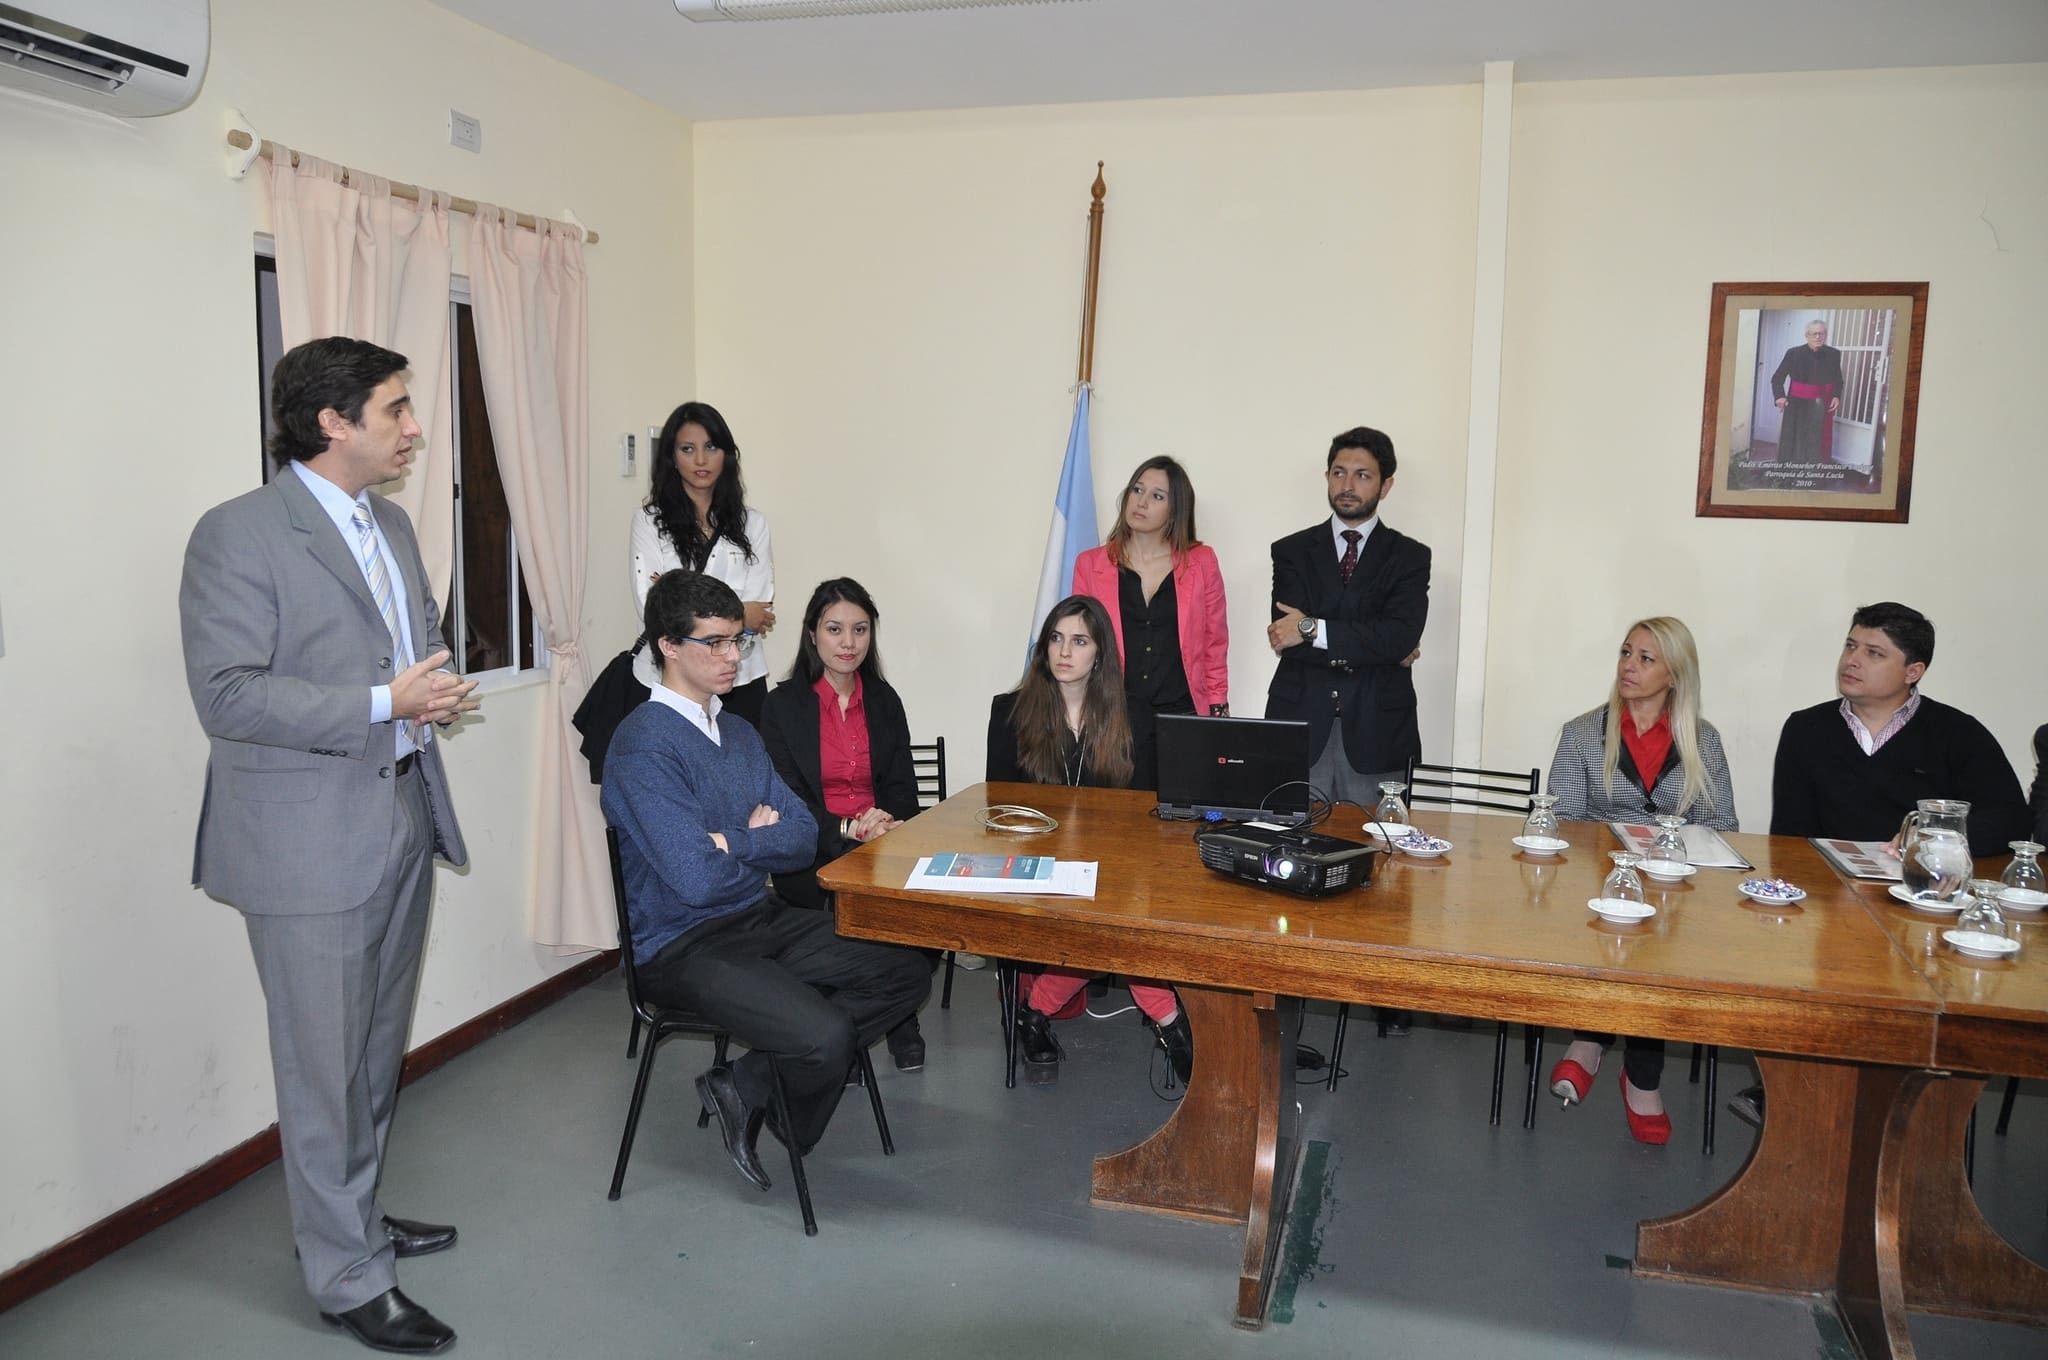 El secretario Legislativo Emilio Baistrocchi encabezó las explicaciones acerca de los primeros avances del Digesto Jurídico municipal.